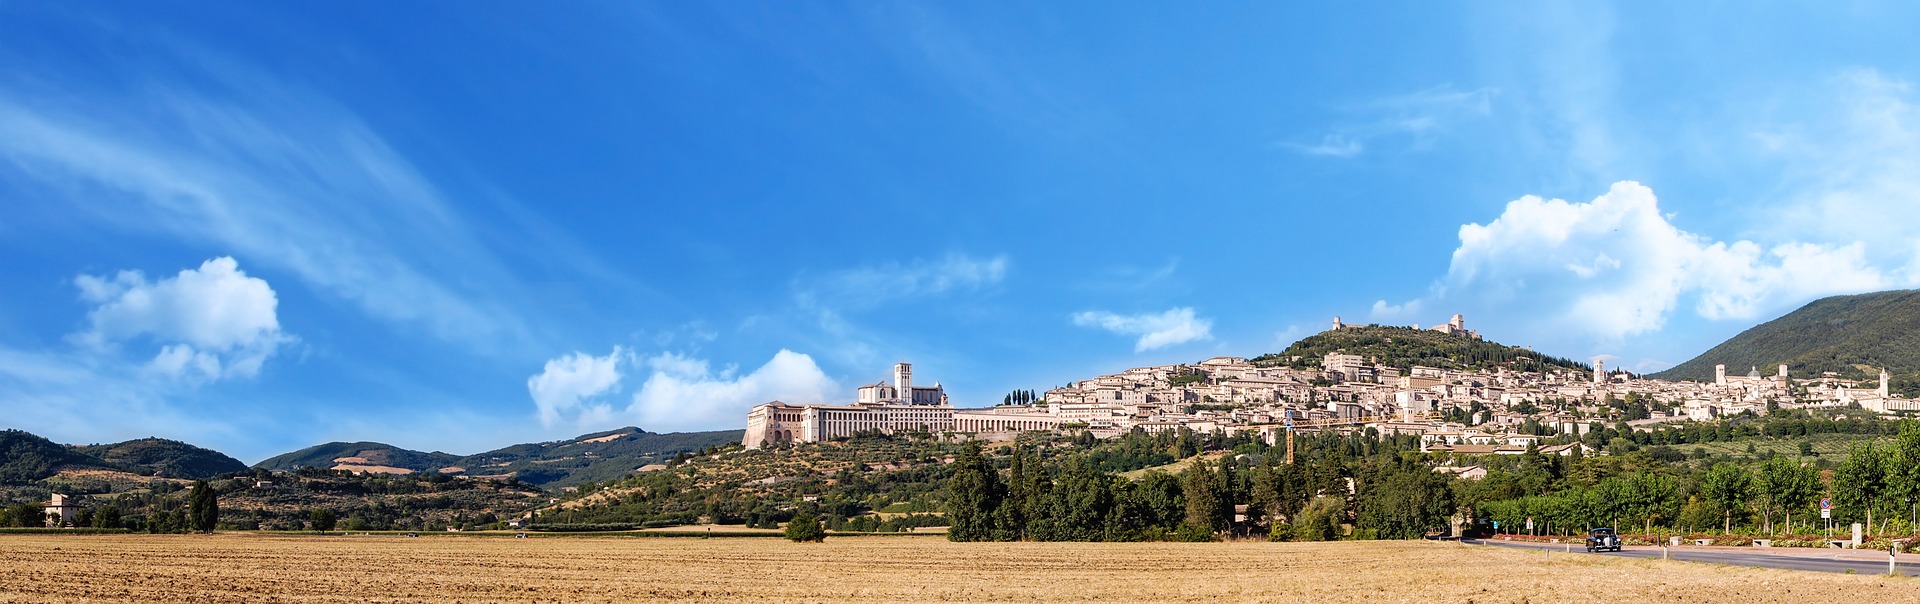 Die umbrische Stadt Assisi aus einiger Entfernung und unter strahlend blauem Himmel